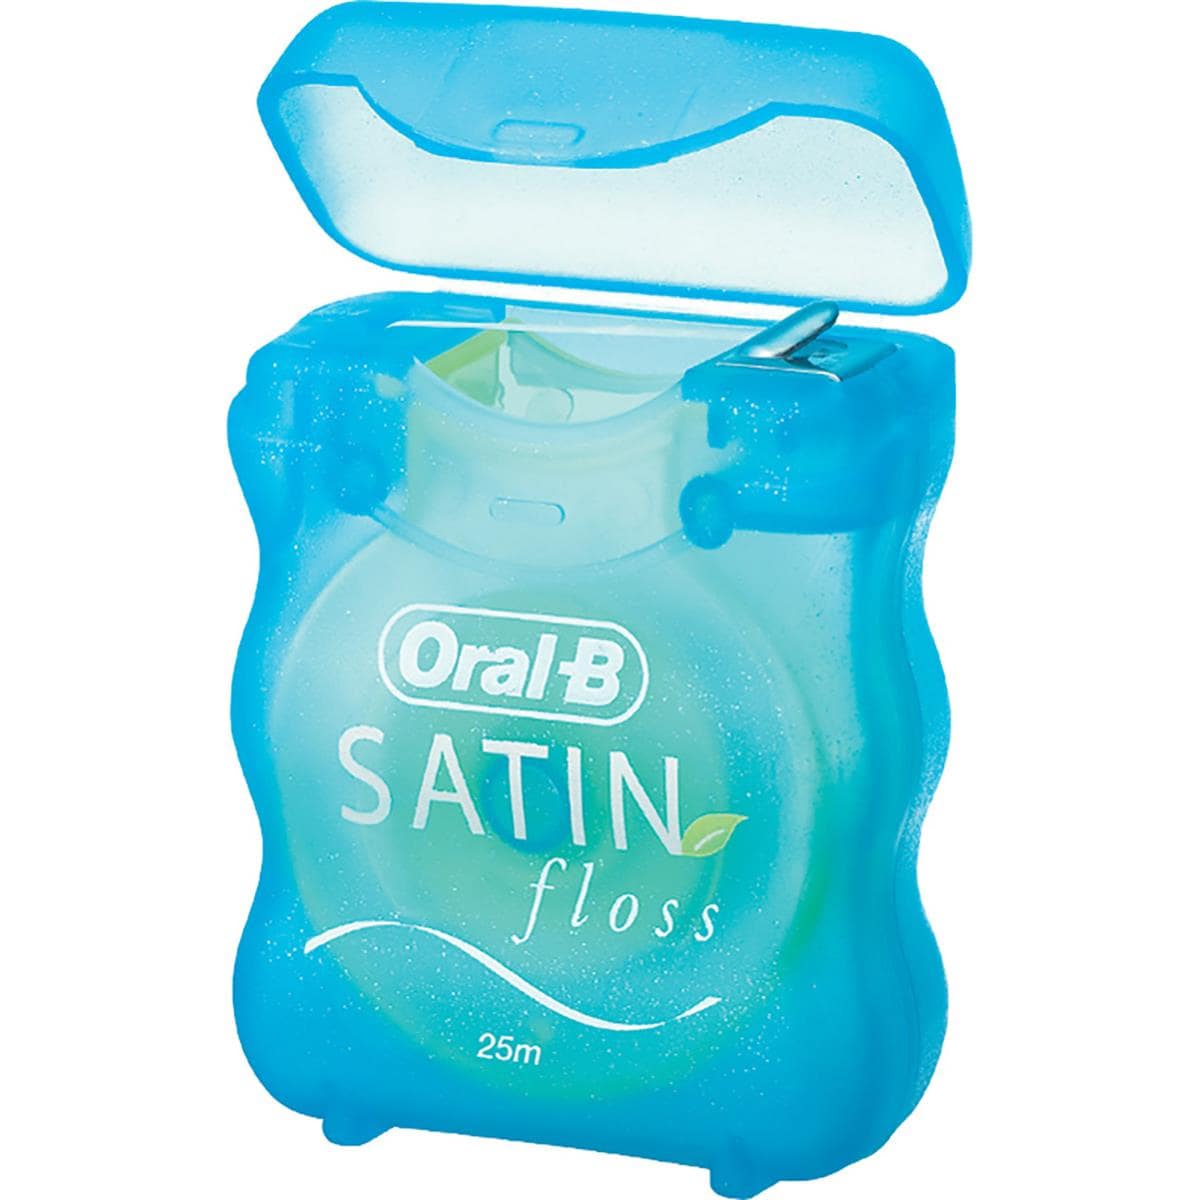 Oral-B Satin Mint 25m 12pk - Henry Schein Dental